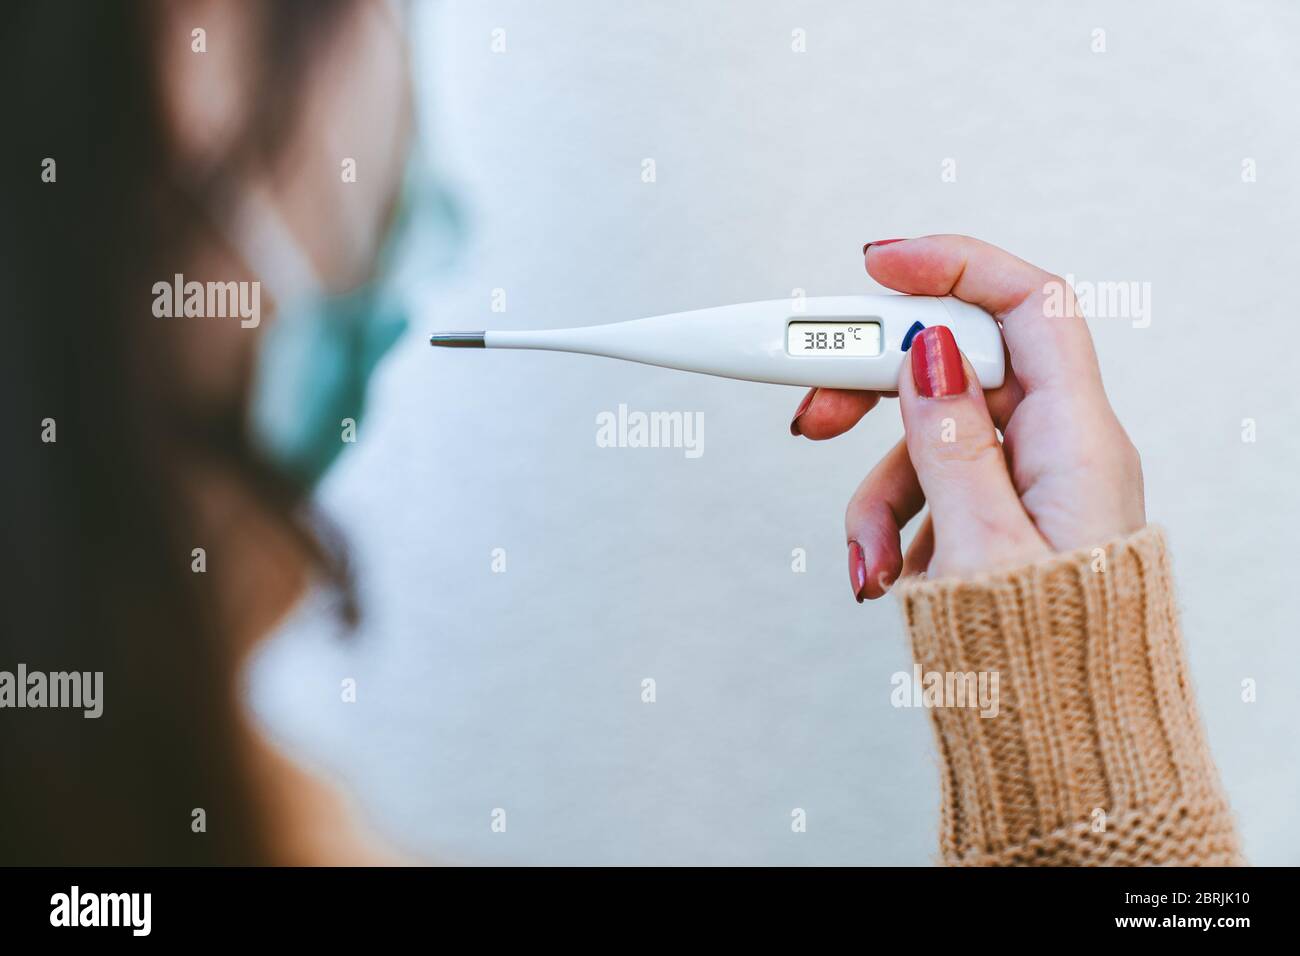 Nahaufnahme einer kranken jungen Frau, die eine chirurgische Maske trägt und ein digitales Thermometer hält, das anzeigt, dass sie über 38 Grad Fieber hat. Stockfoto